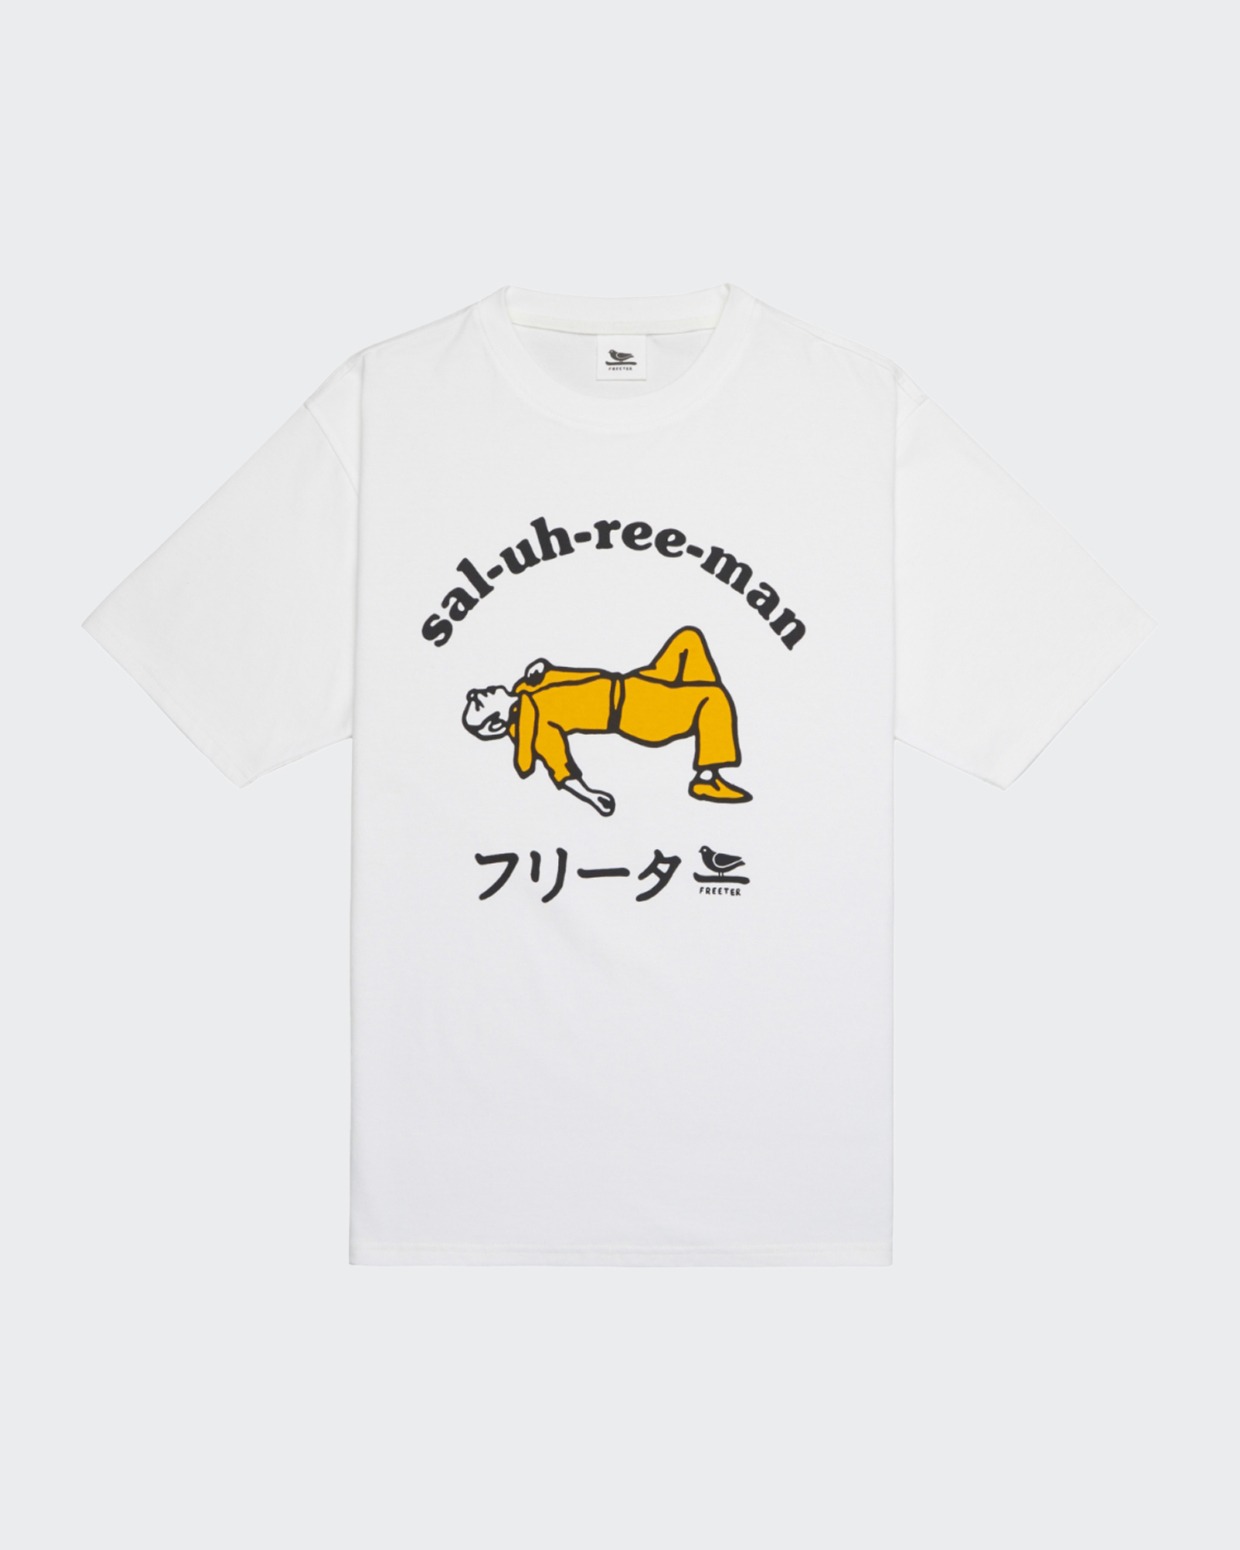 Freeter Studio Sal-uh-ree-man T-Shirt